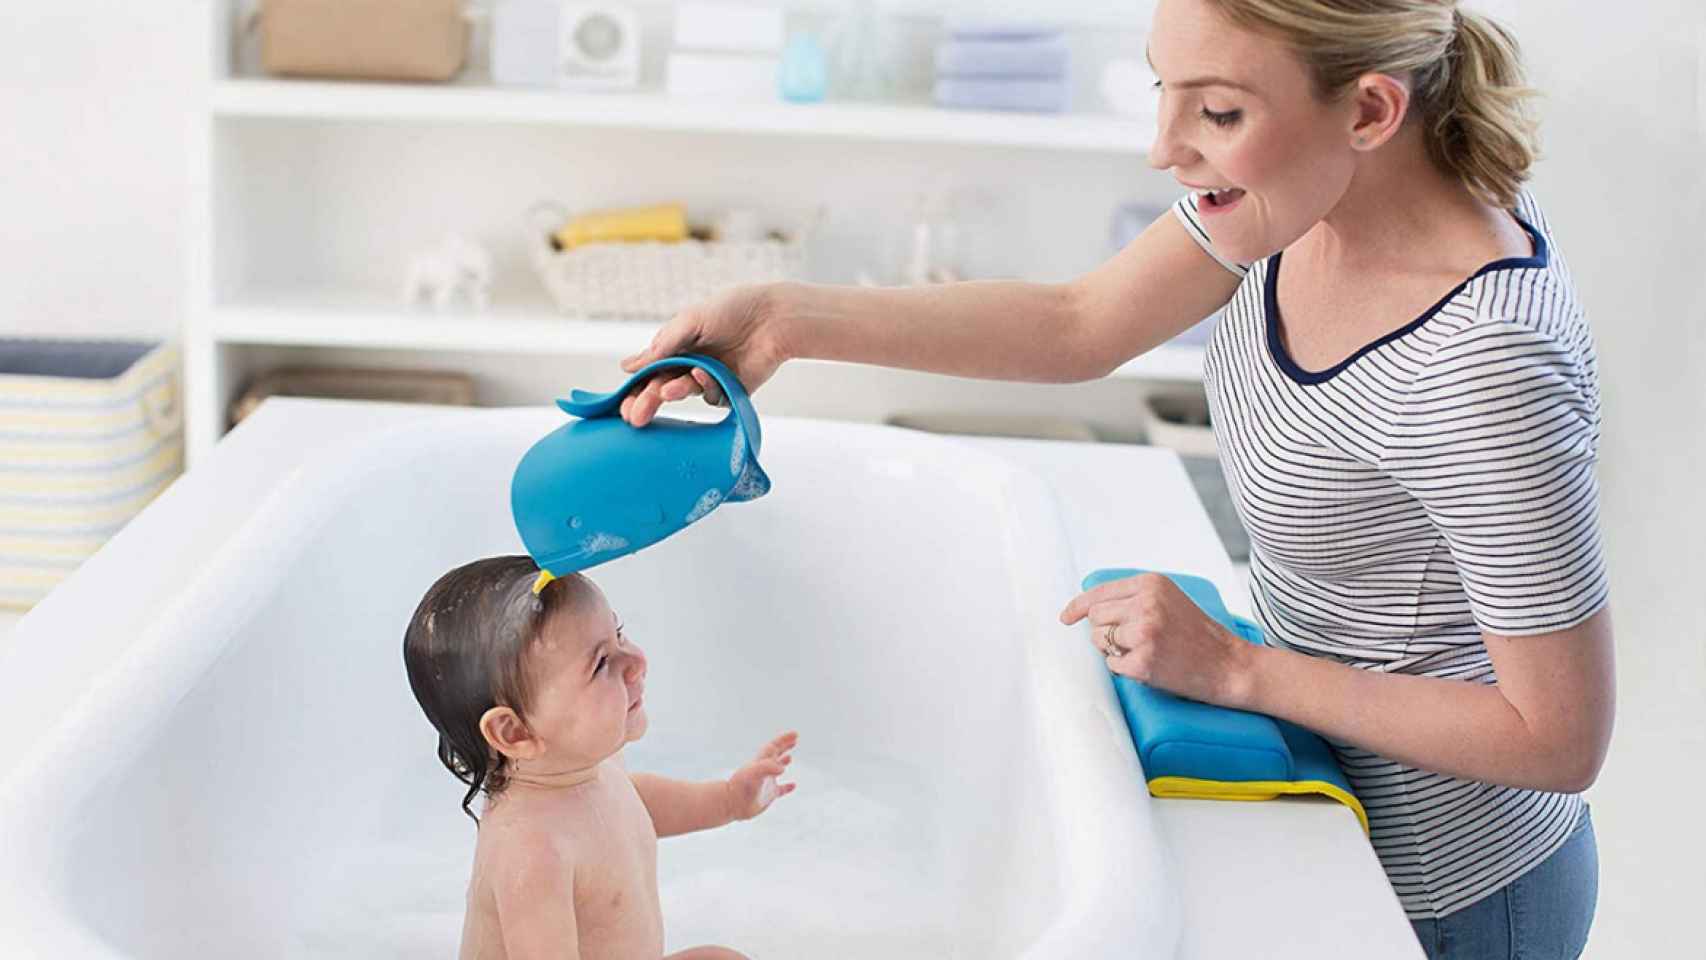 La hora del baño del bebé: accesorios prácticos para la bañera.